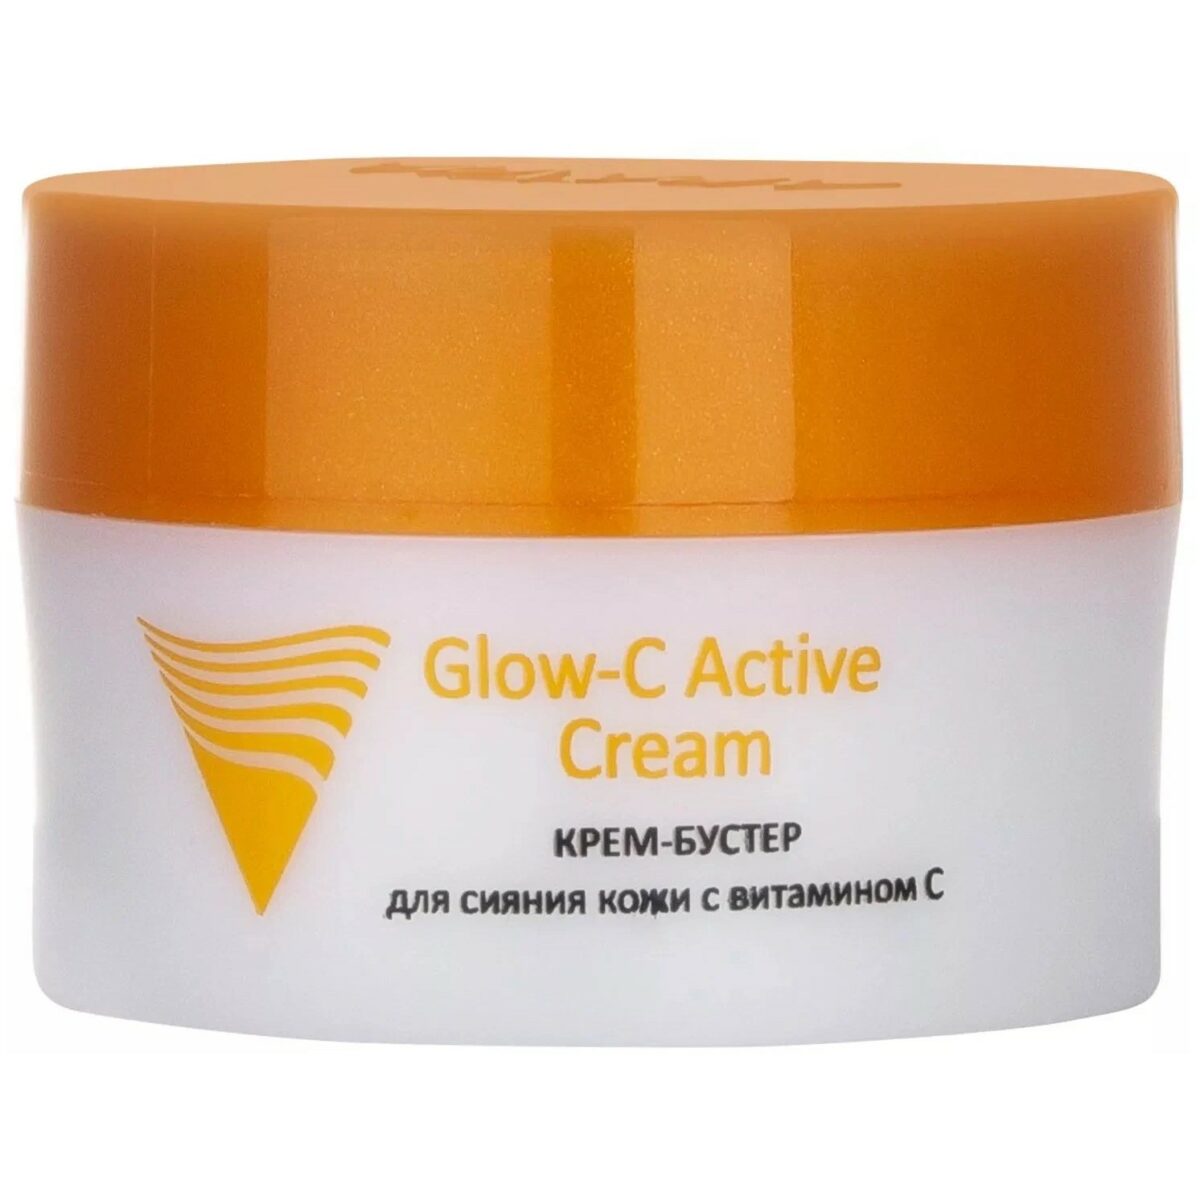 ARAVIA Крем-бустер Professional Glow-C Active Cream, 50 мл (9211)